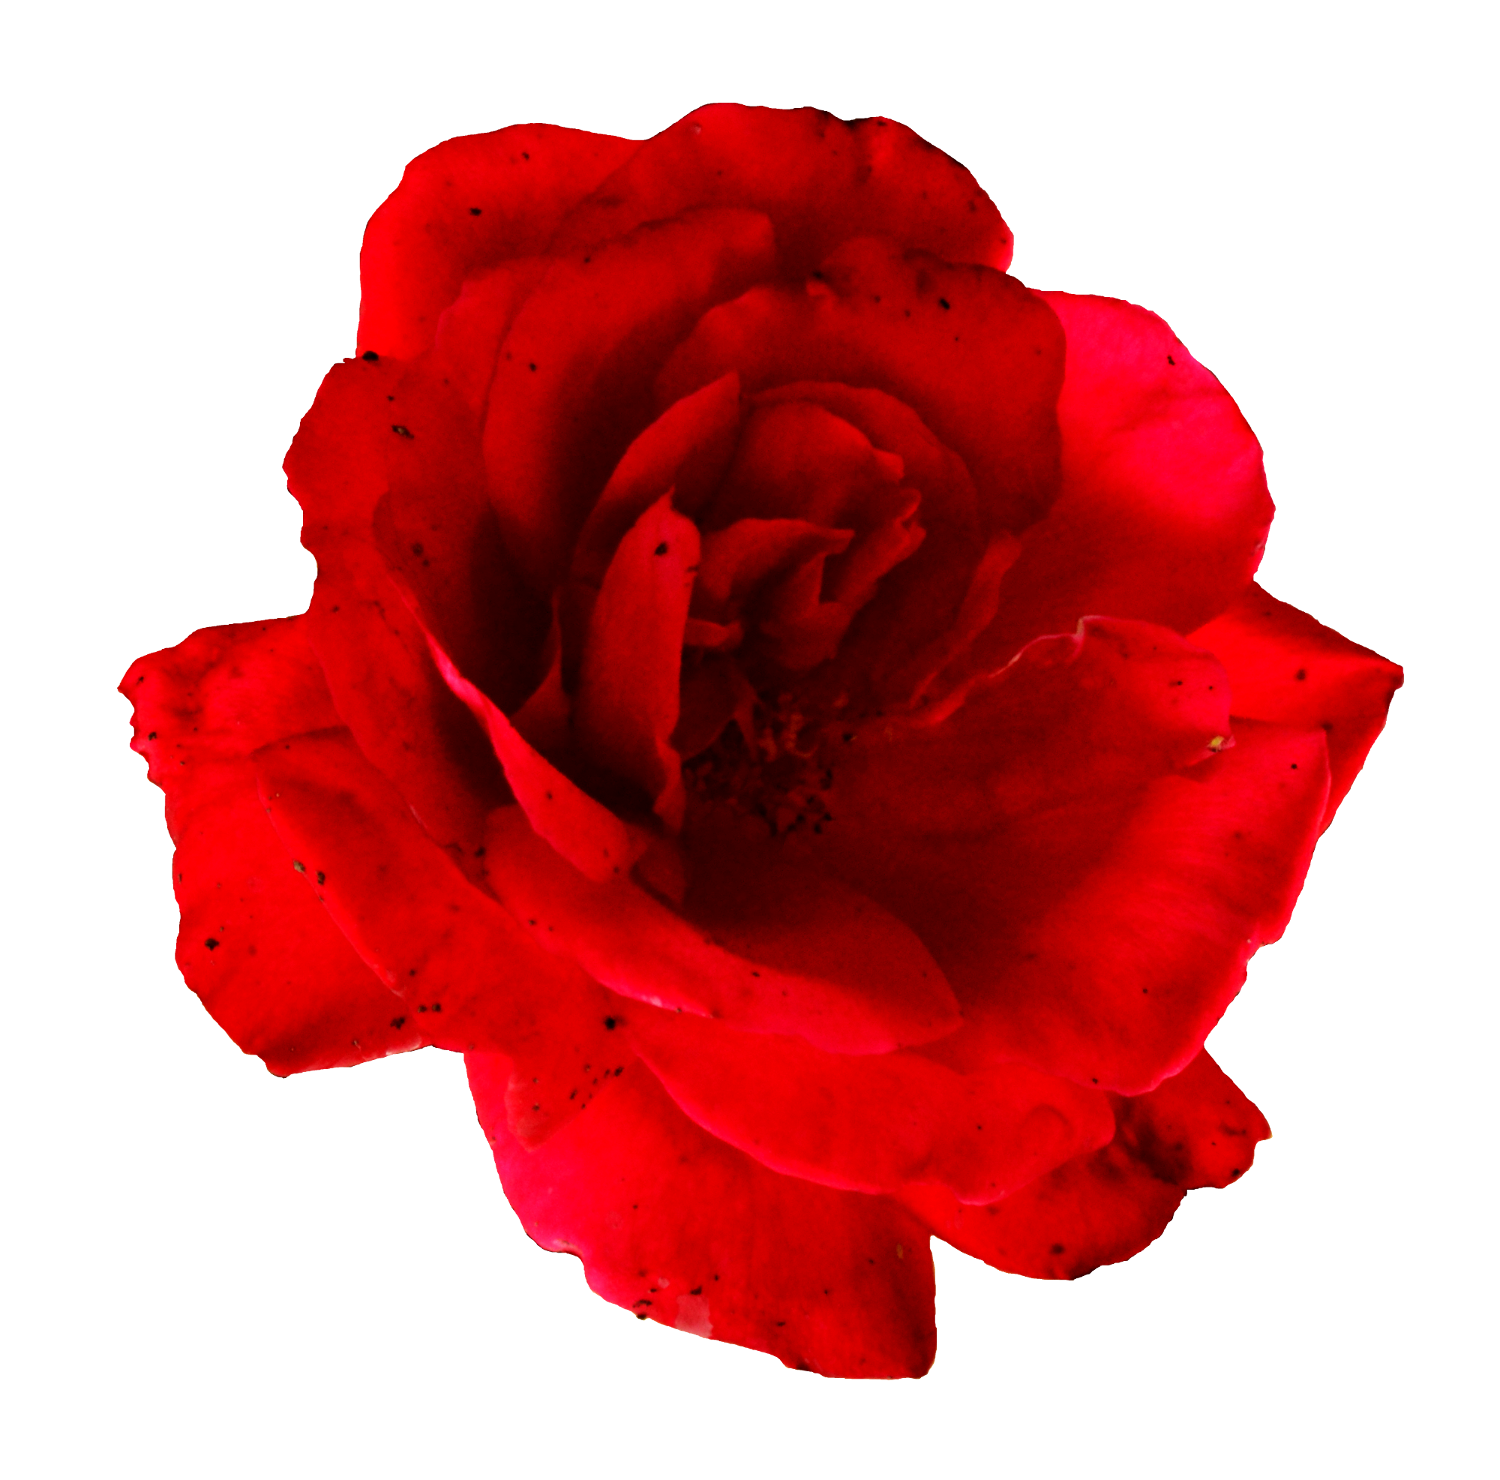  red rose image. Flower png transparent